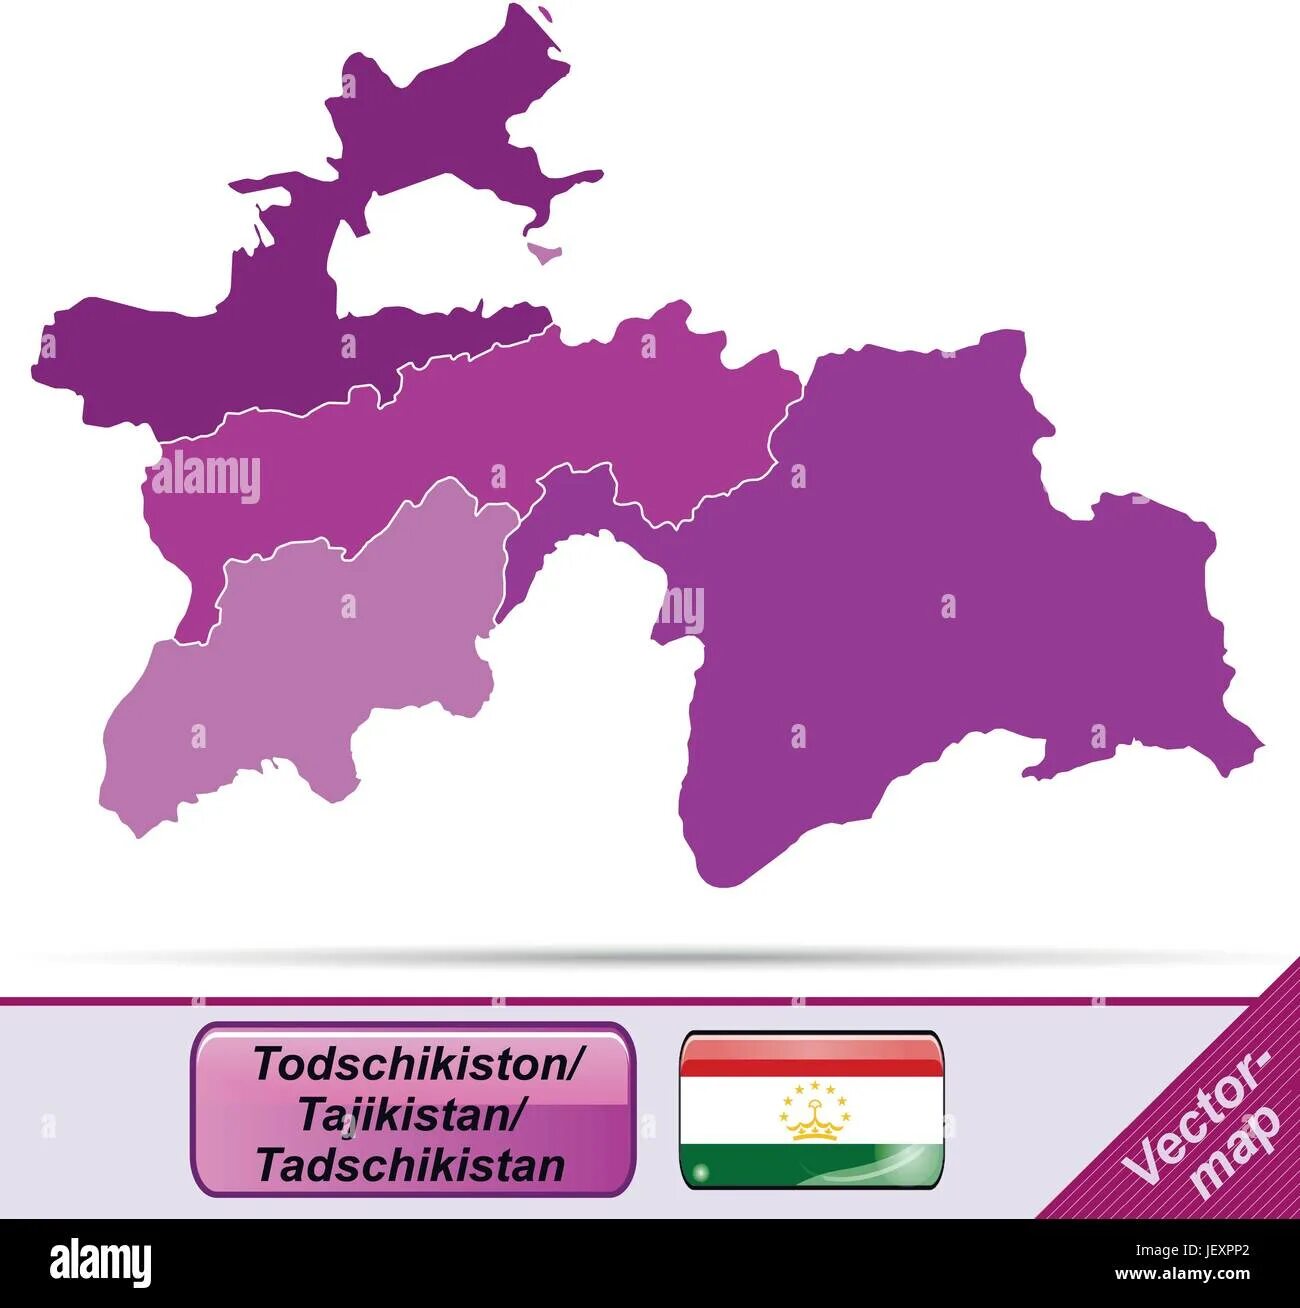 Карта Таджикистан 2021. Карта Таджикистан 2022 карта. Карта Таджикистан 1700. Карта Таджикистана с городами.